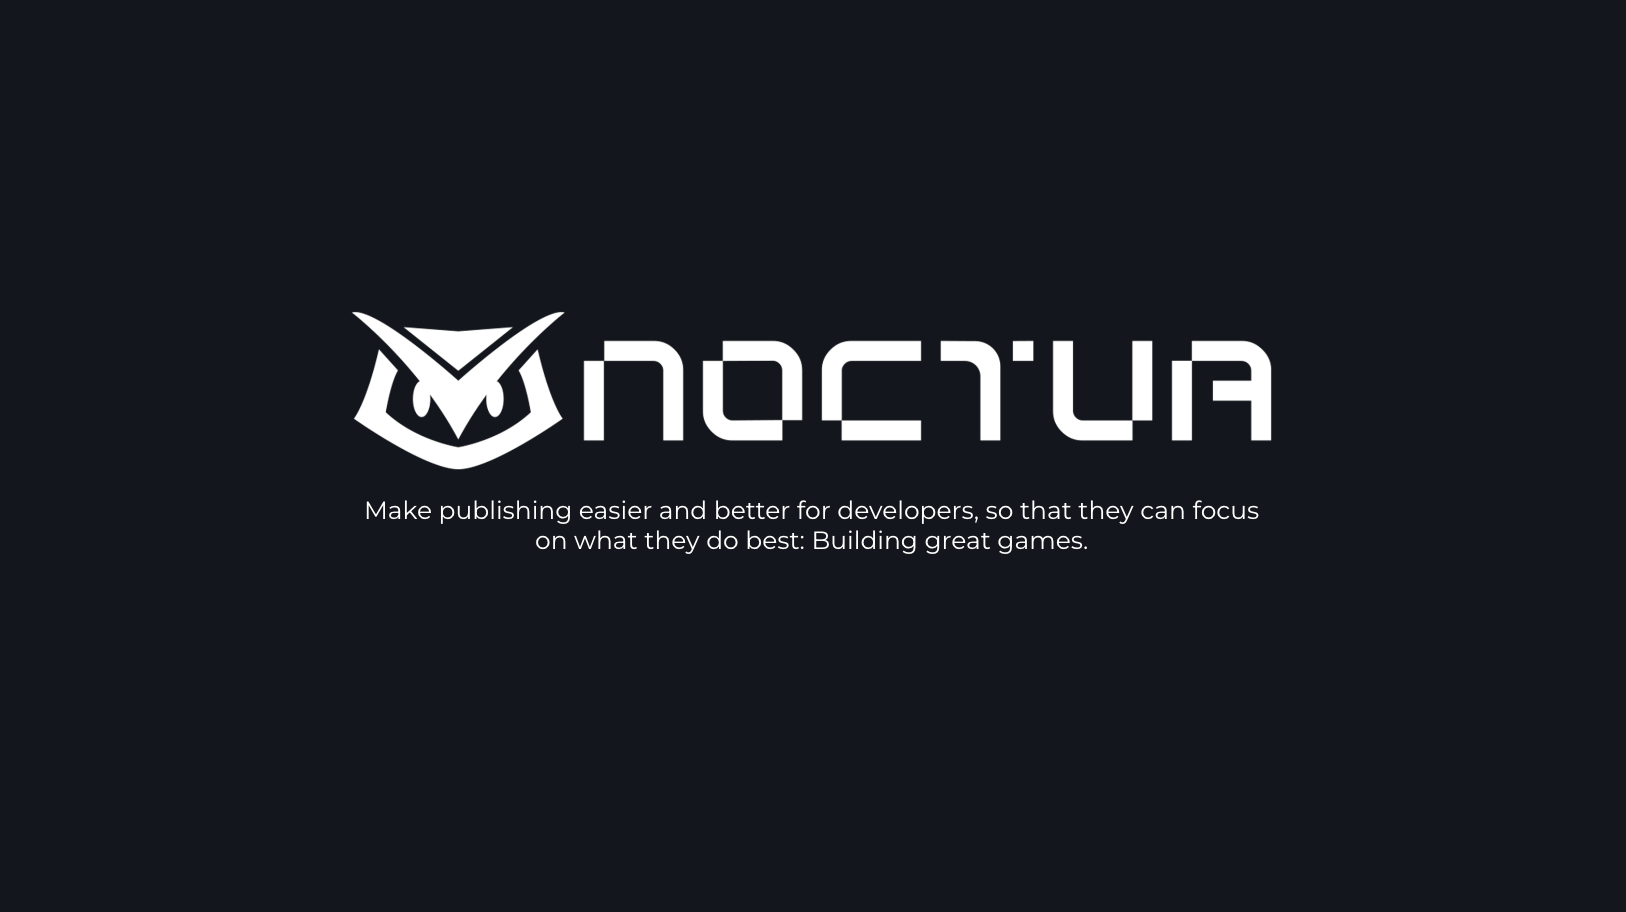 【W fund・東南アジア】モバイルゲームに特化したゲームパブリッシング事業を展開するNoctuaへ投資実行